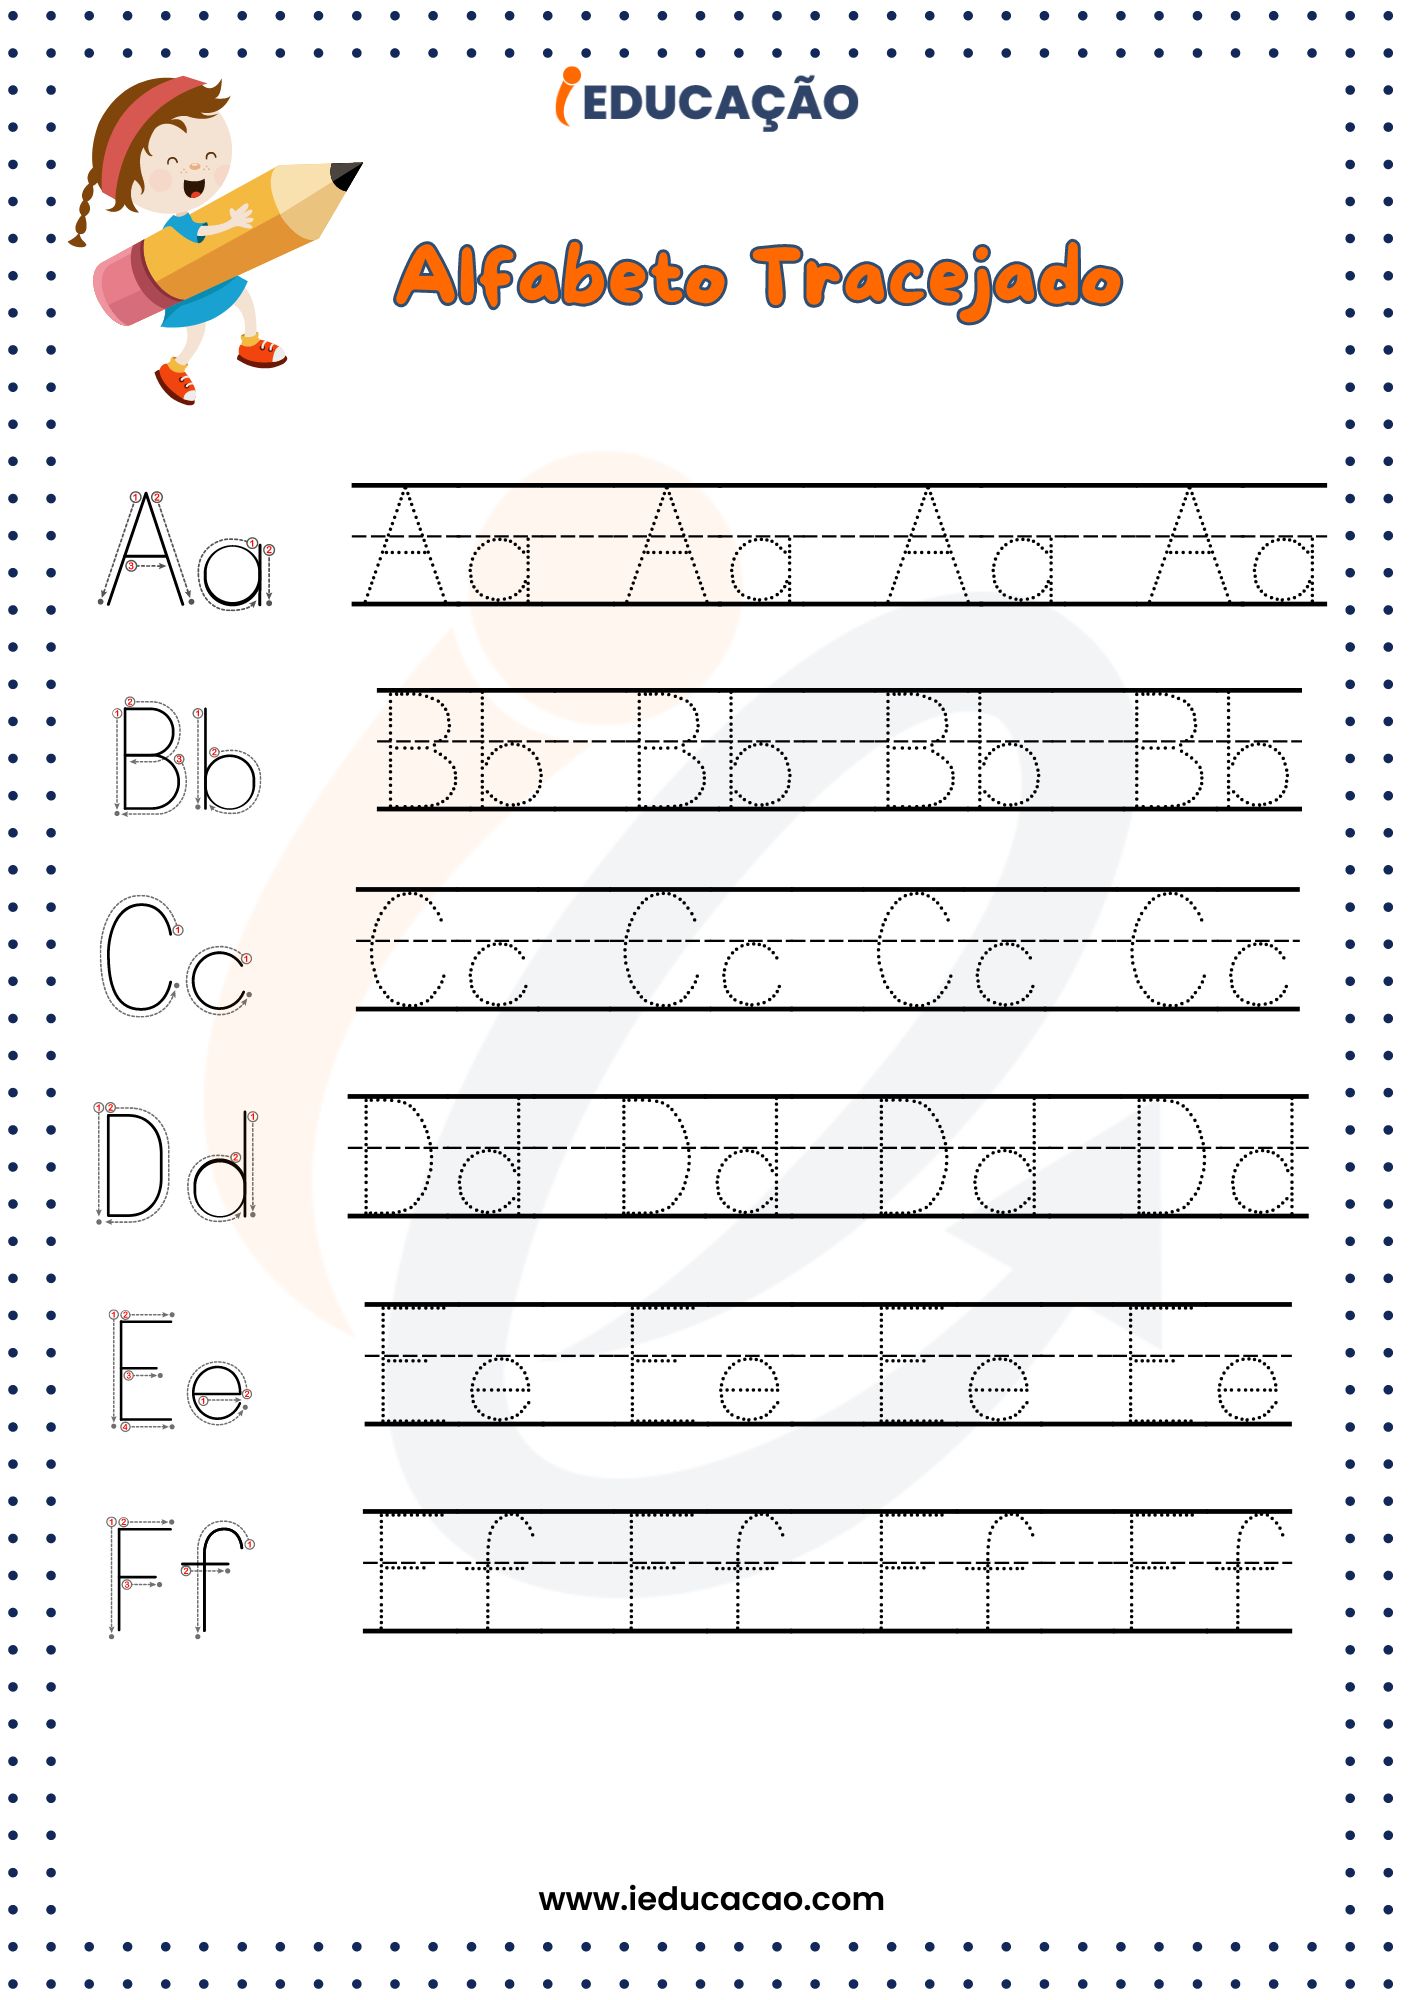 Alfabeto pontilhado letras maiúsculas e minúsculas